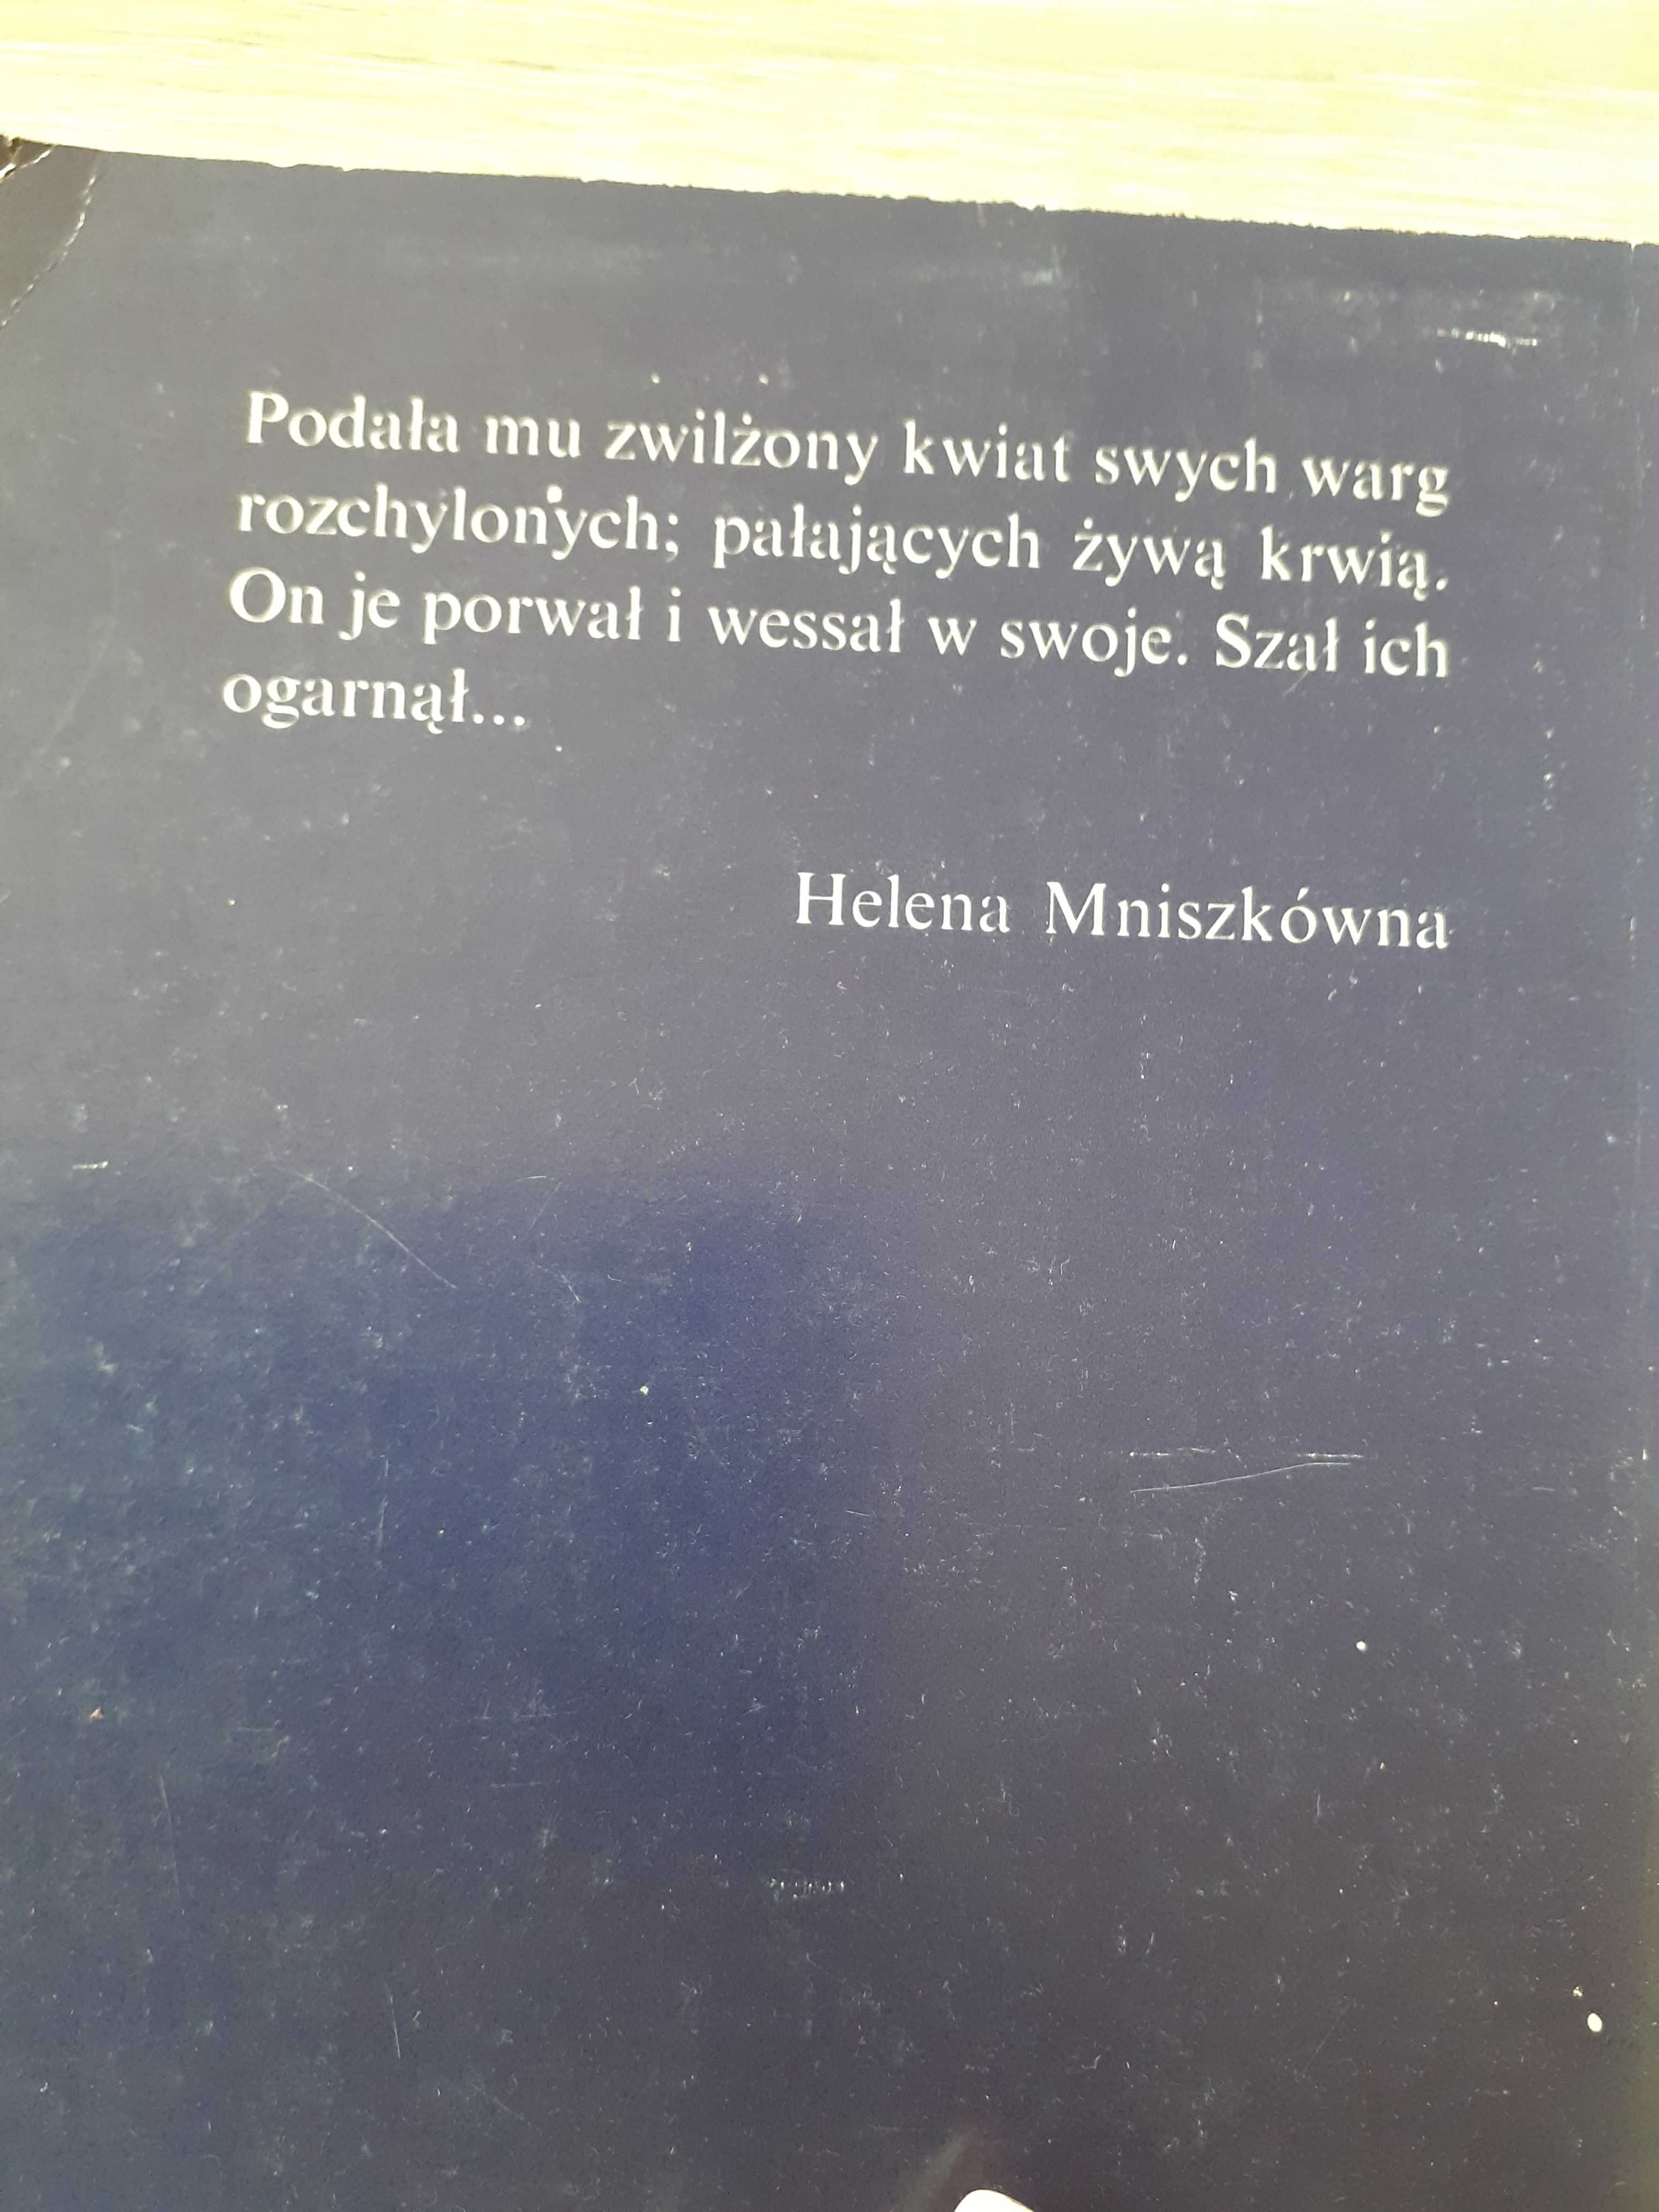 Helena Mniszek- Gehenna, Verte, czciciele szatana